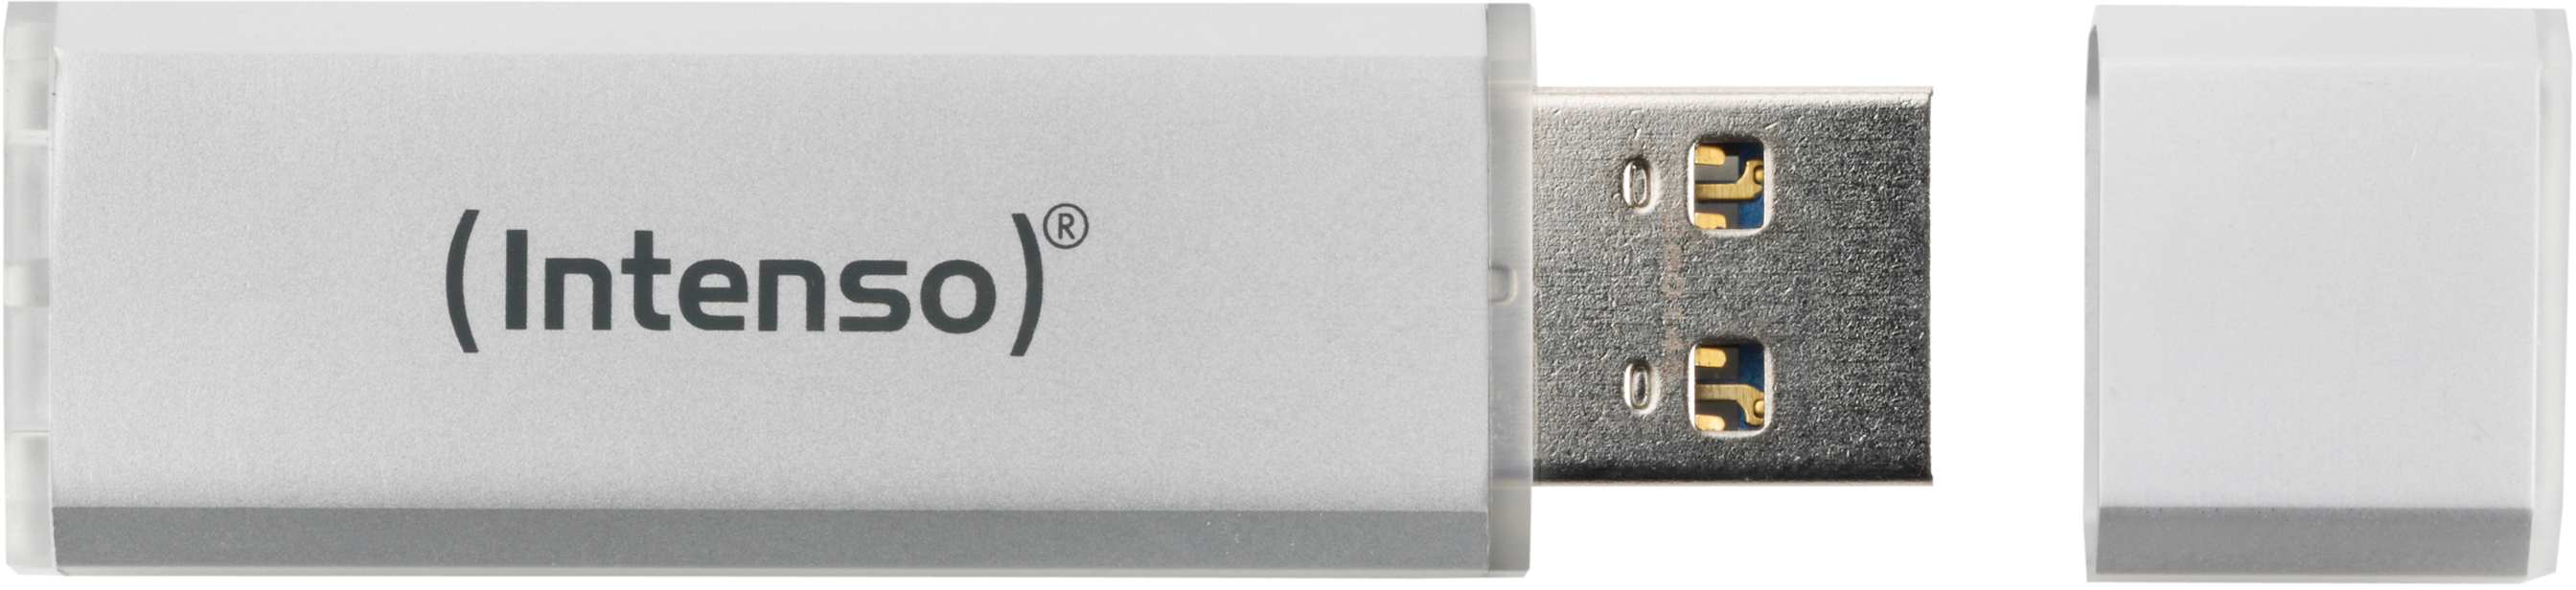 INTENSO USB-Stick Alu Line 16GB 3521472 USB 2.0 silver USB 2.0 silver